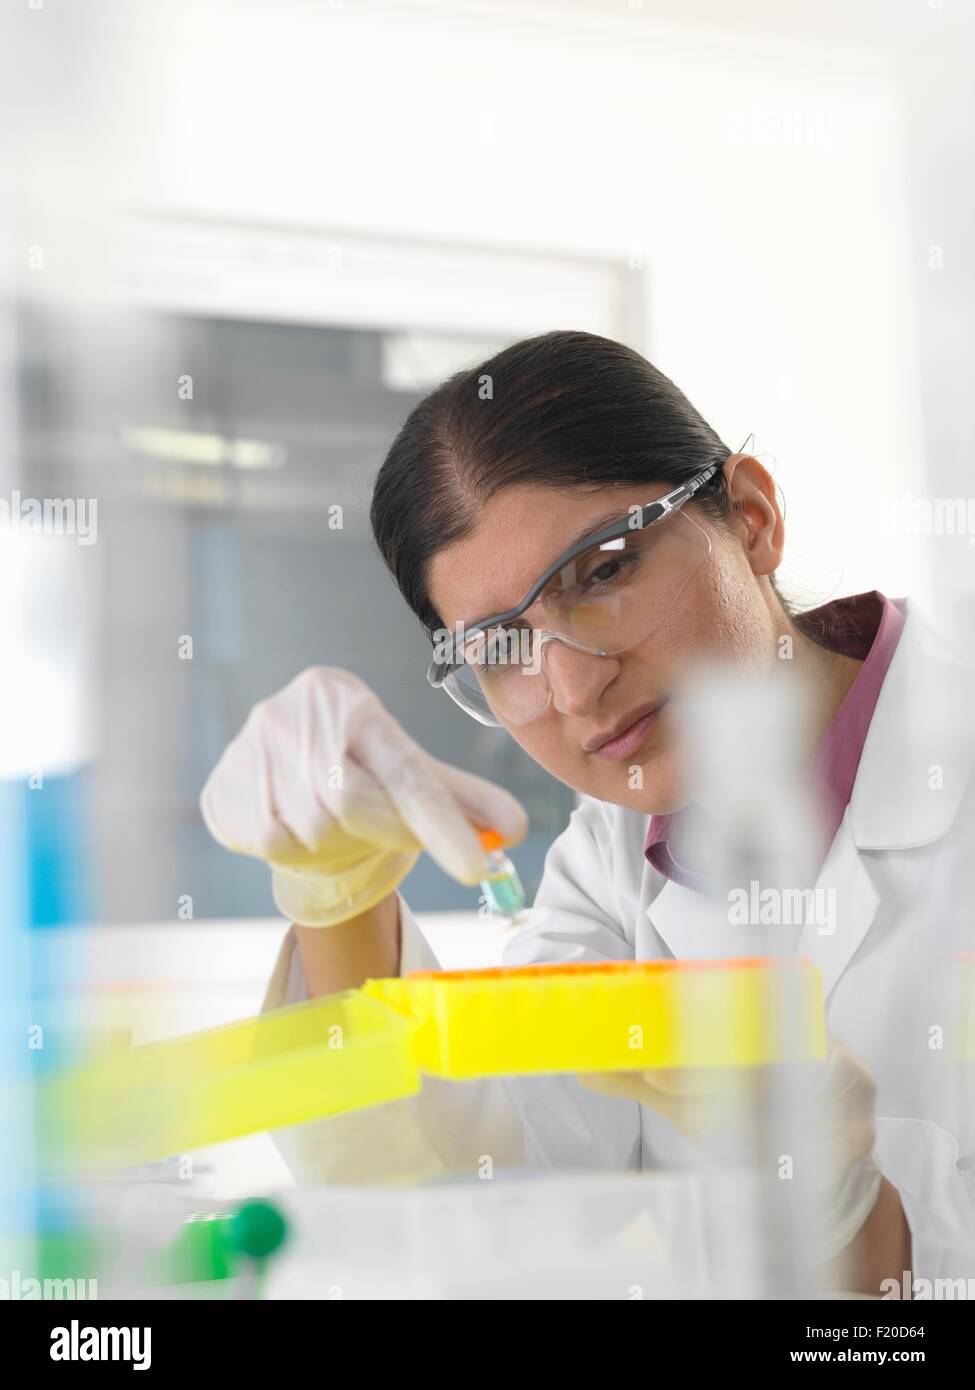 Investigadora examinando muestras de sustancias químicas en el laboratorio Foto de stock